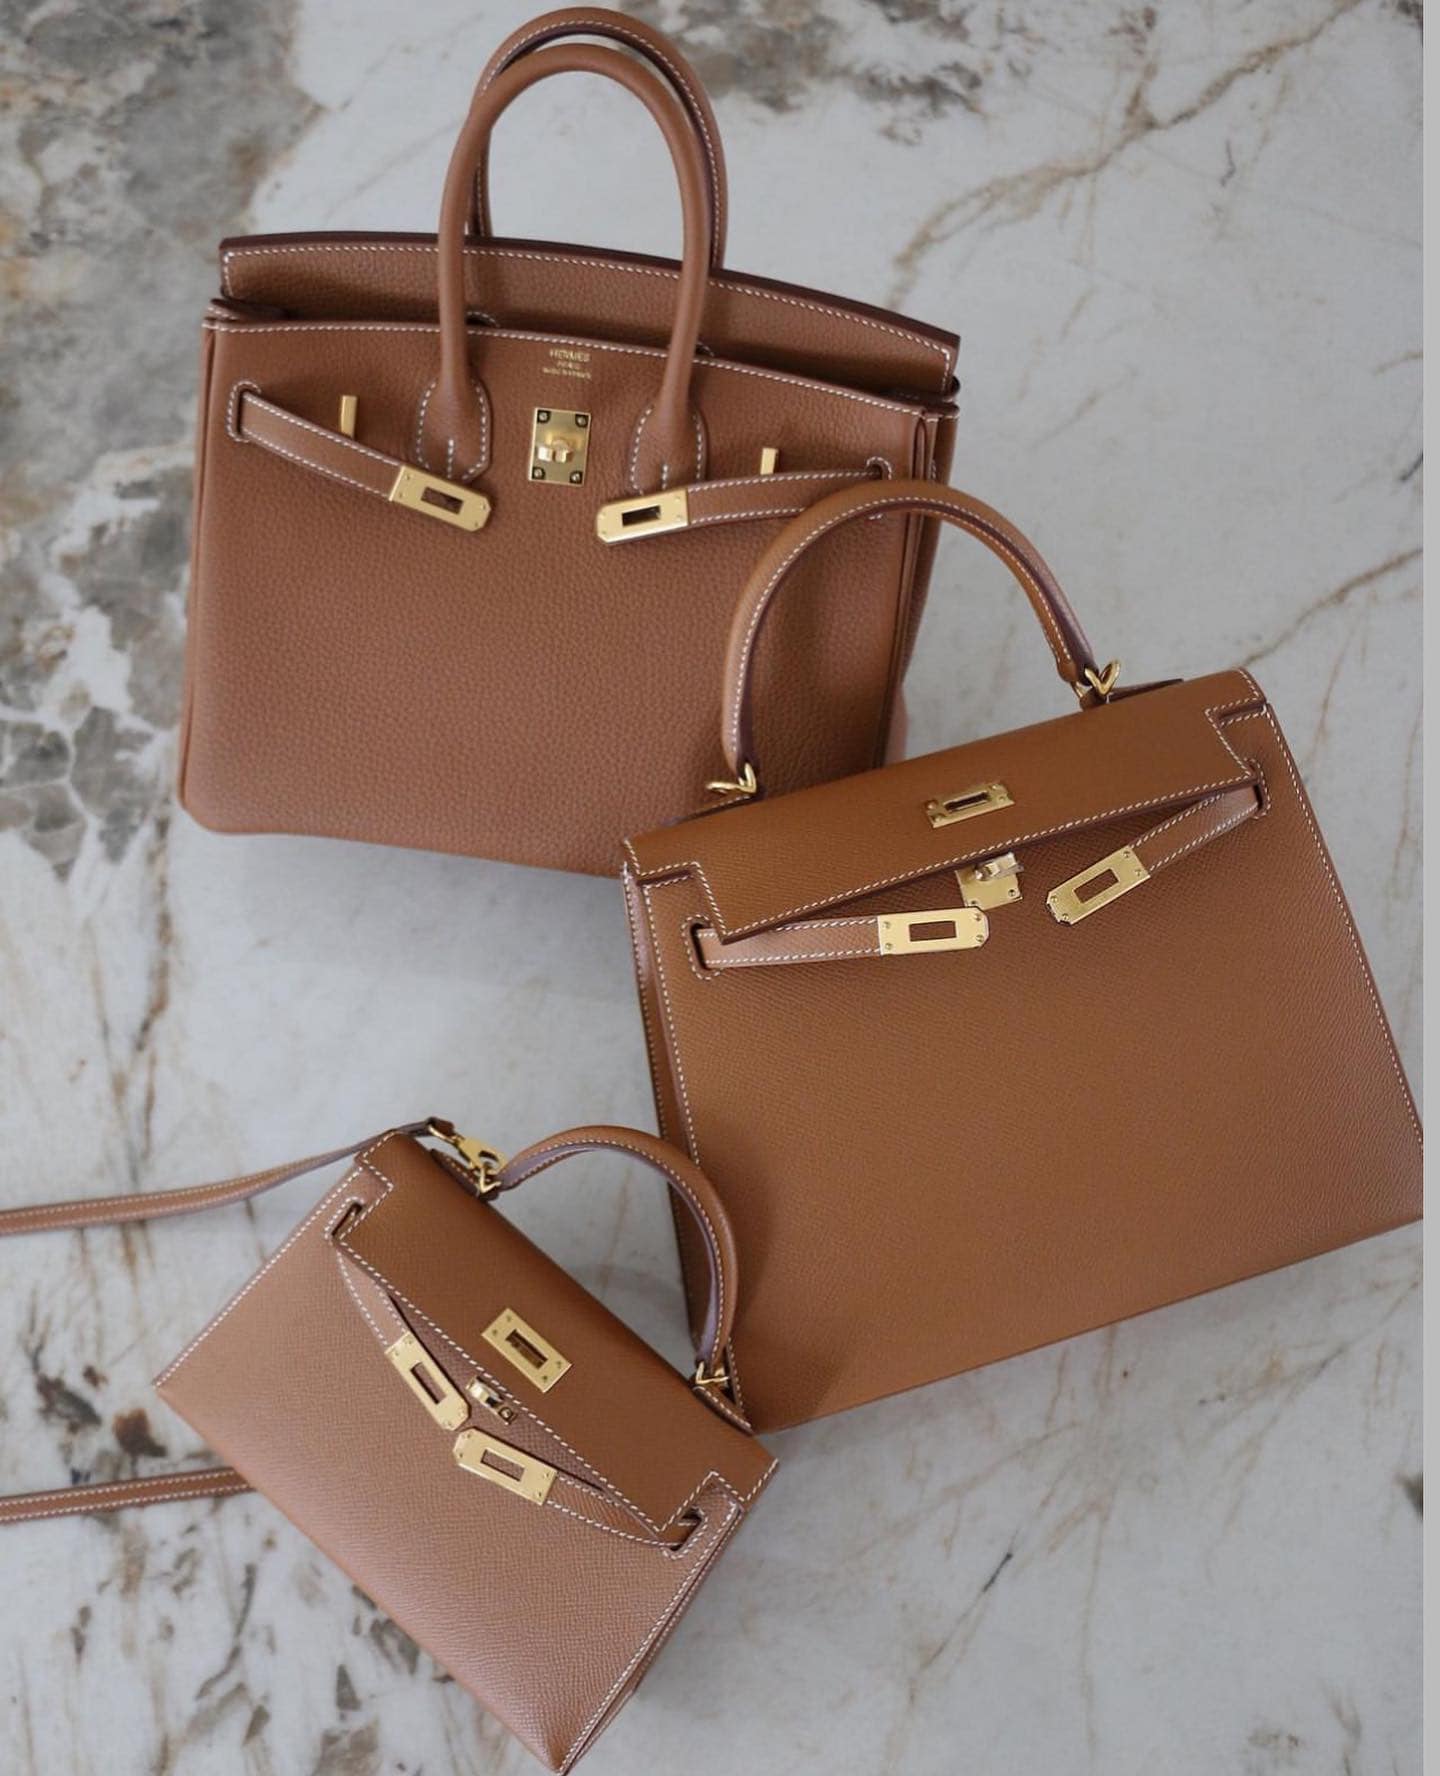 Hermes Gold Bag Hardest Hermes Bag Colors to Purchase